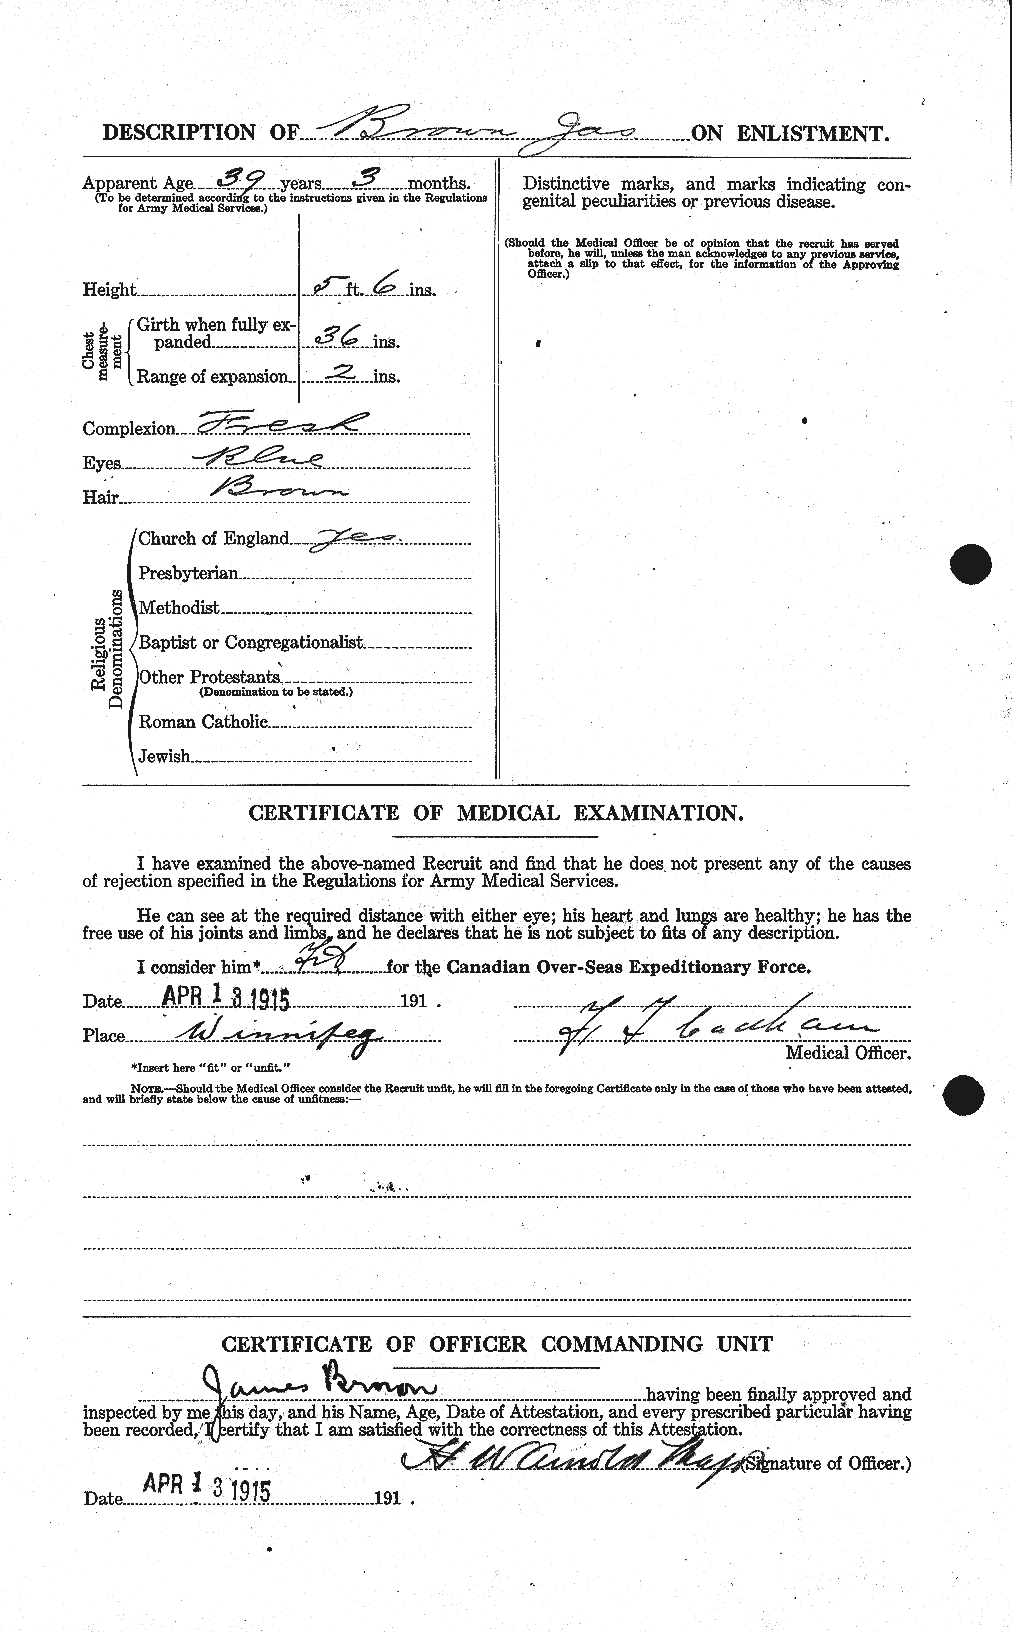 Dossiers du Personnel de la Première Guerre mondiale - CEC 265761b